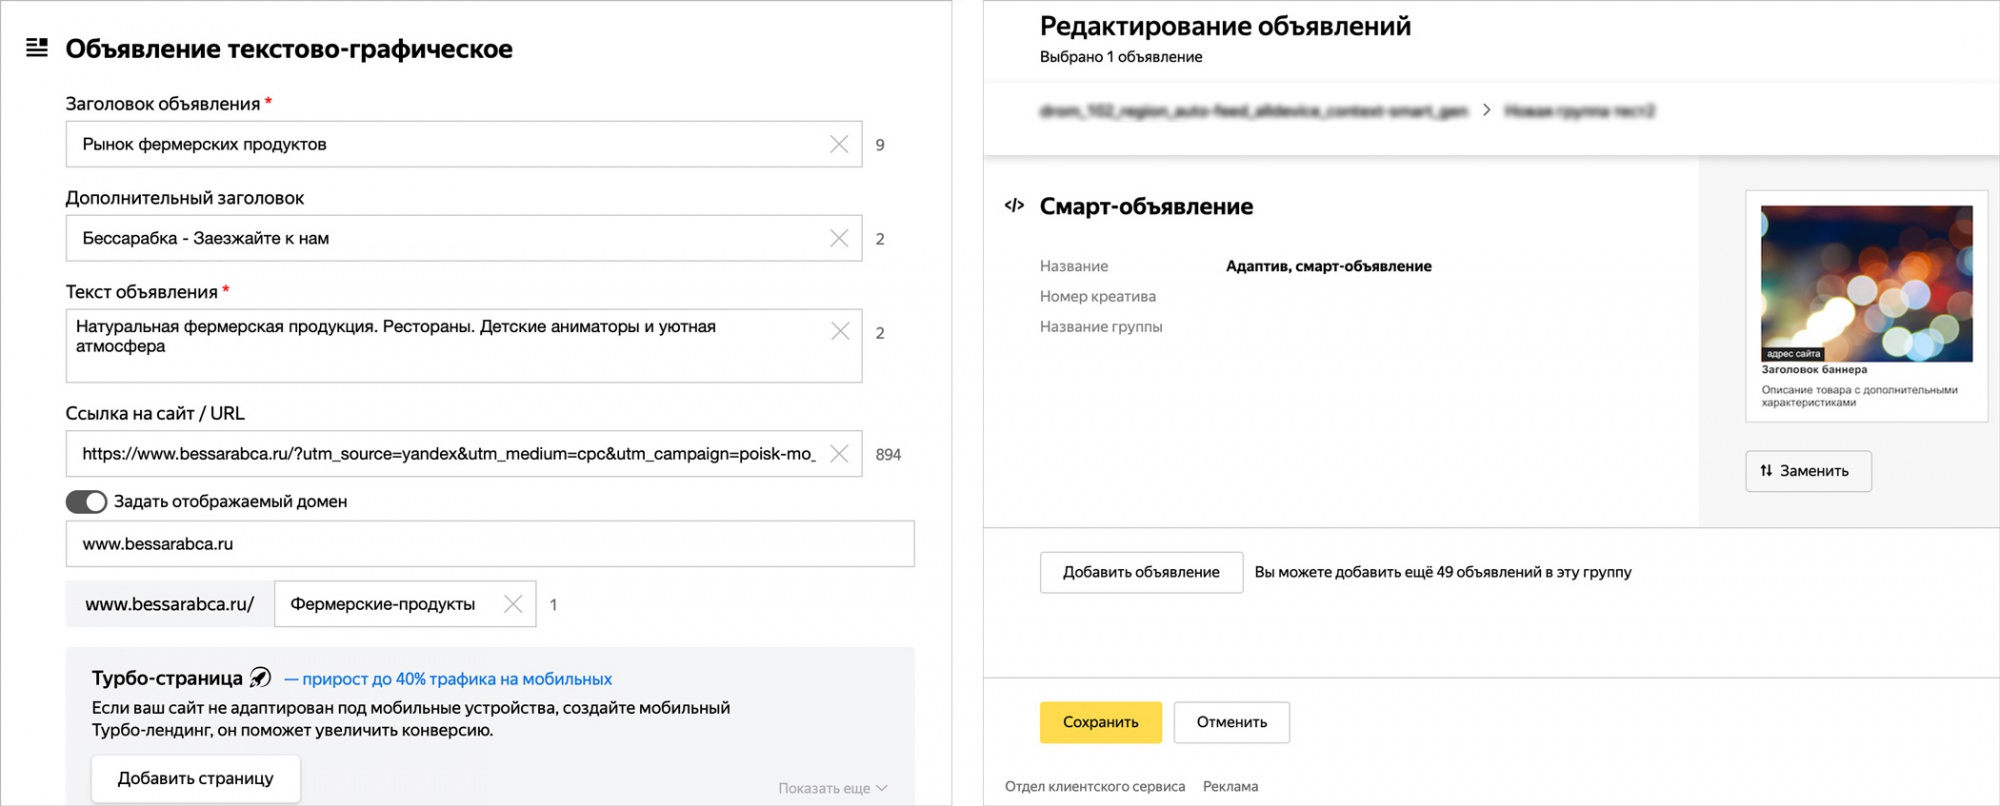 Яндекс.Директ обновляет окно редактирования объявлений